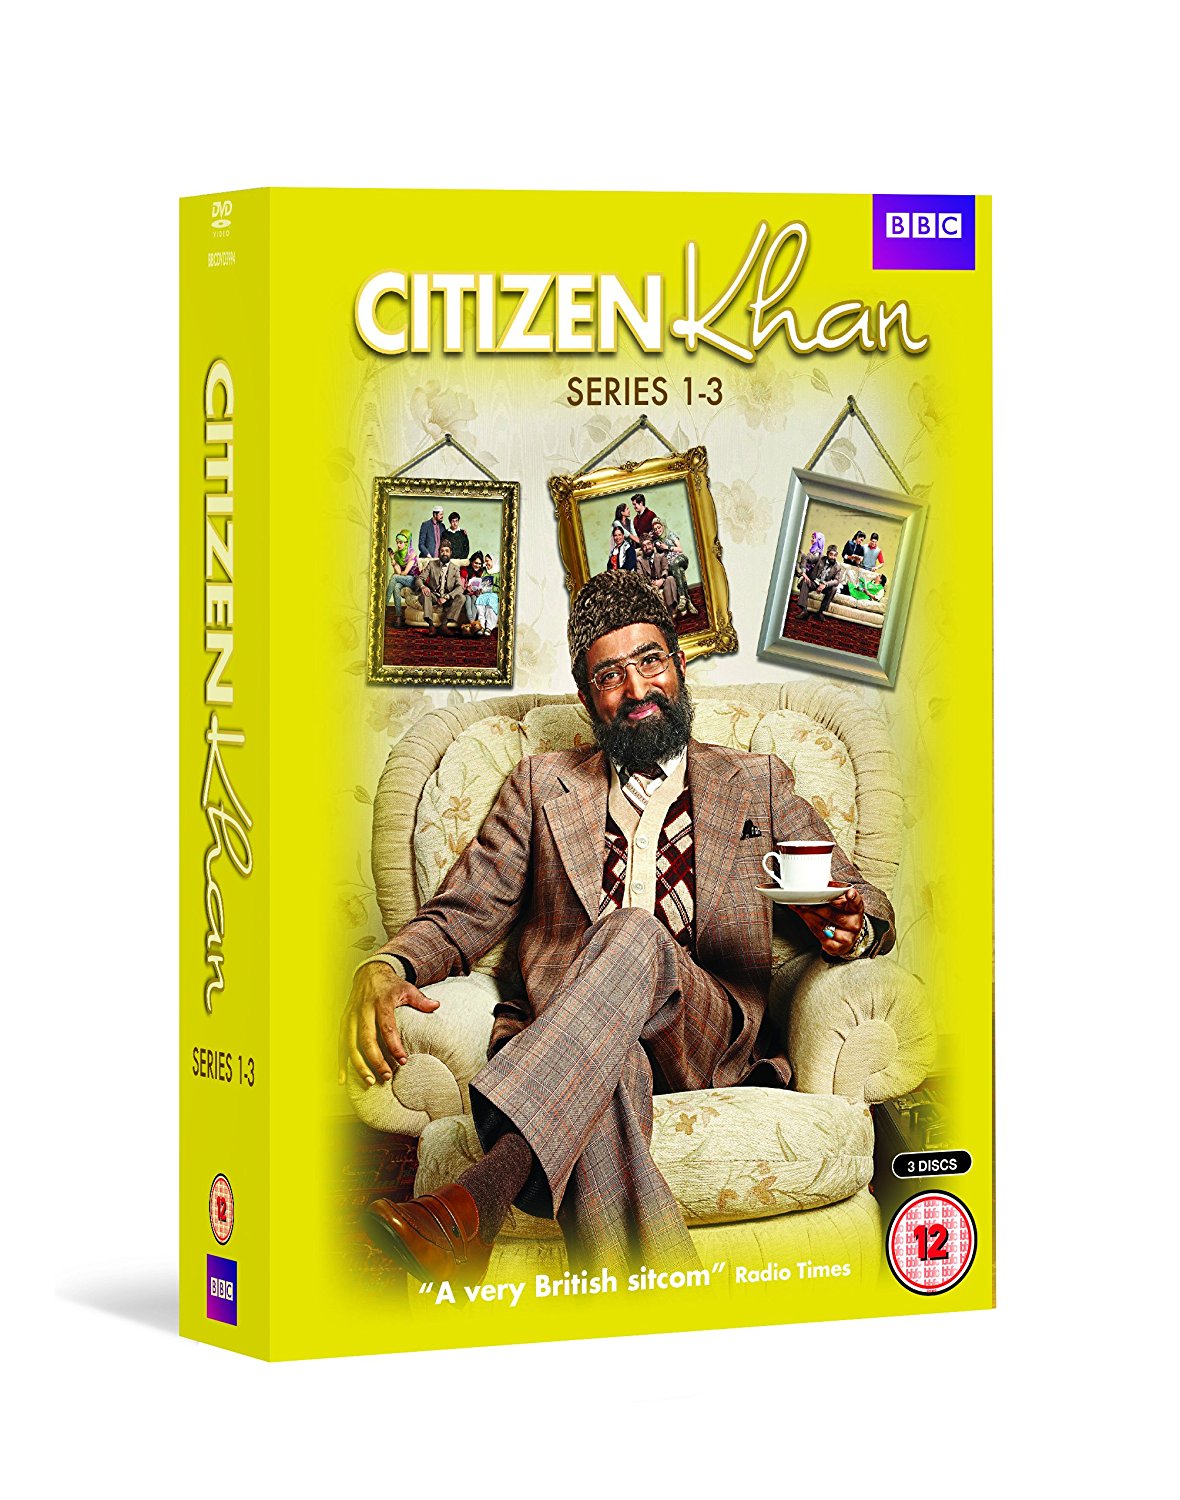 Citizen Khan S1 - 3 Box Set (DVD)